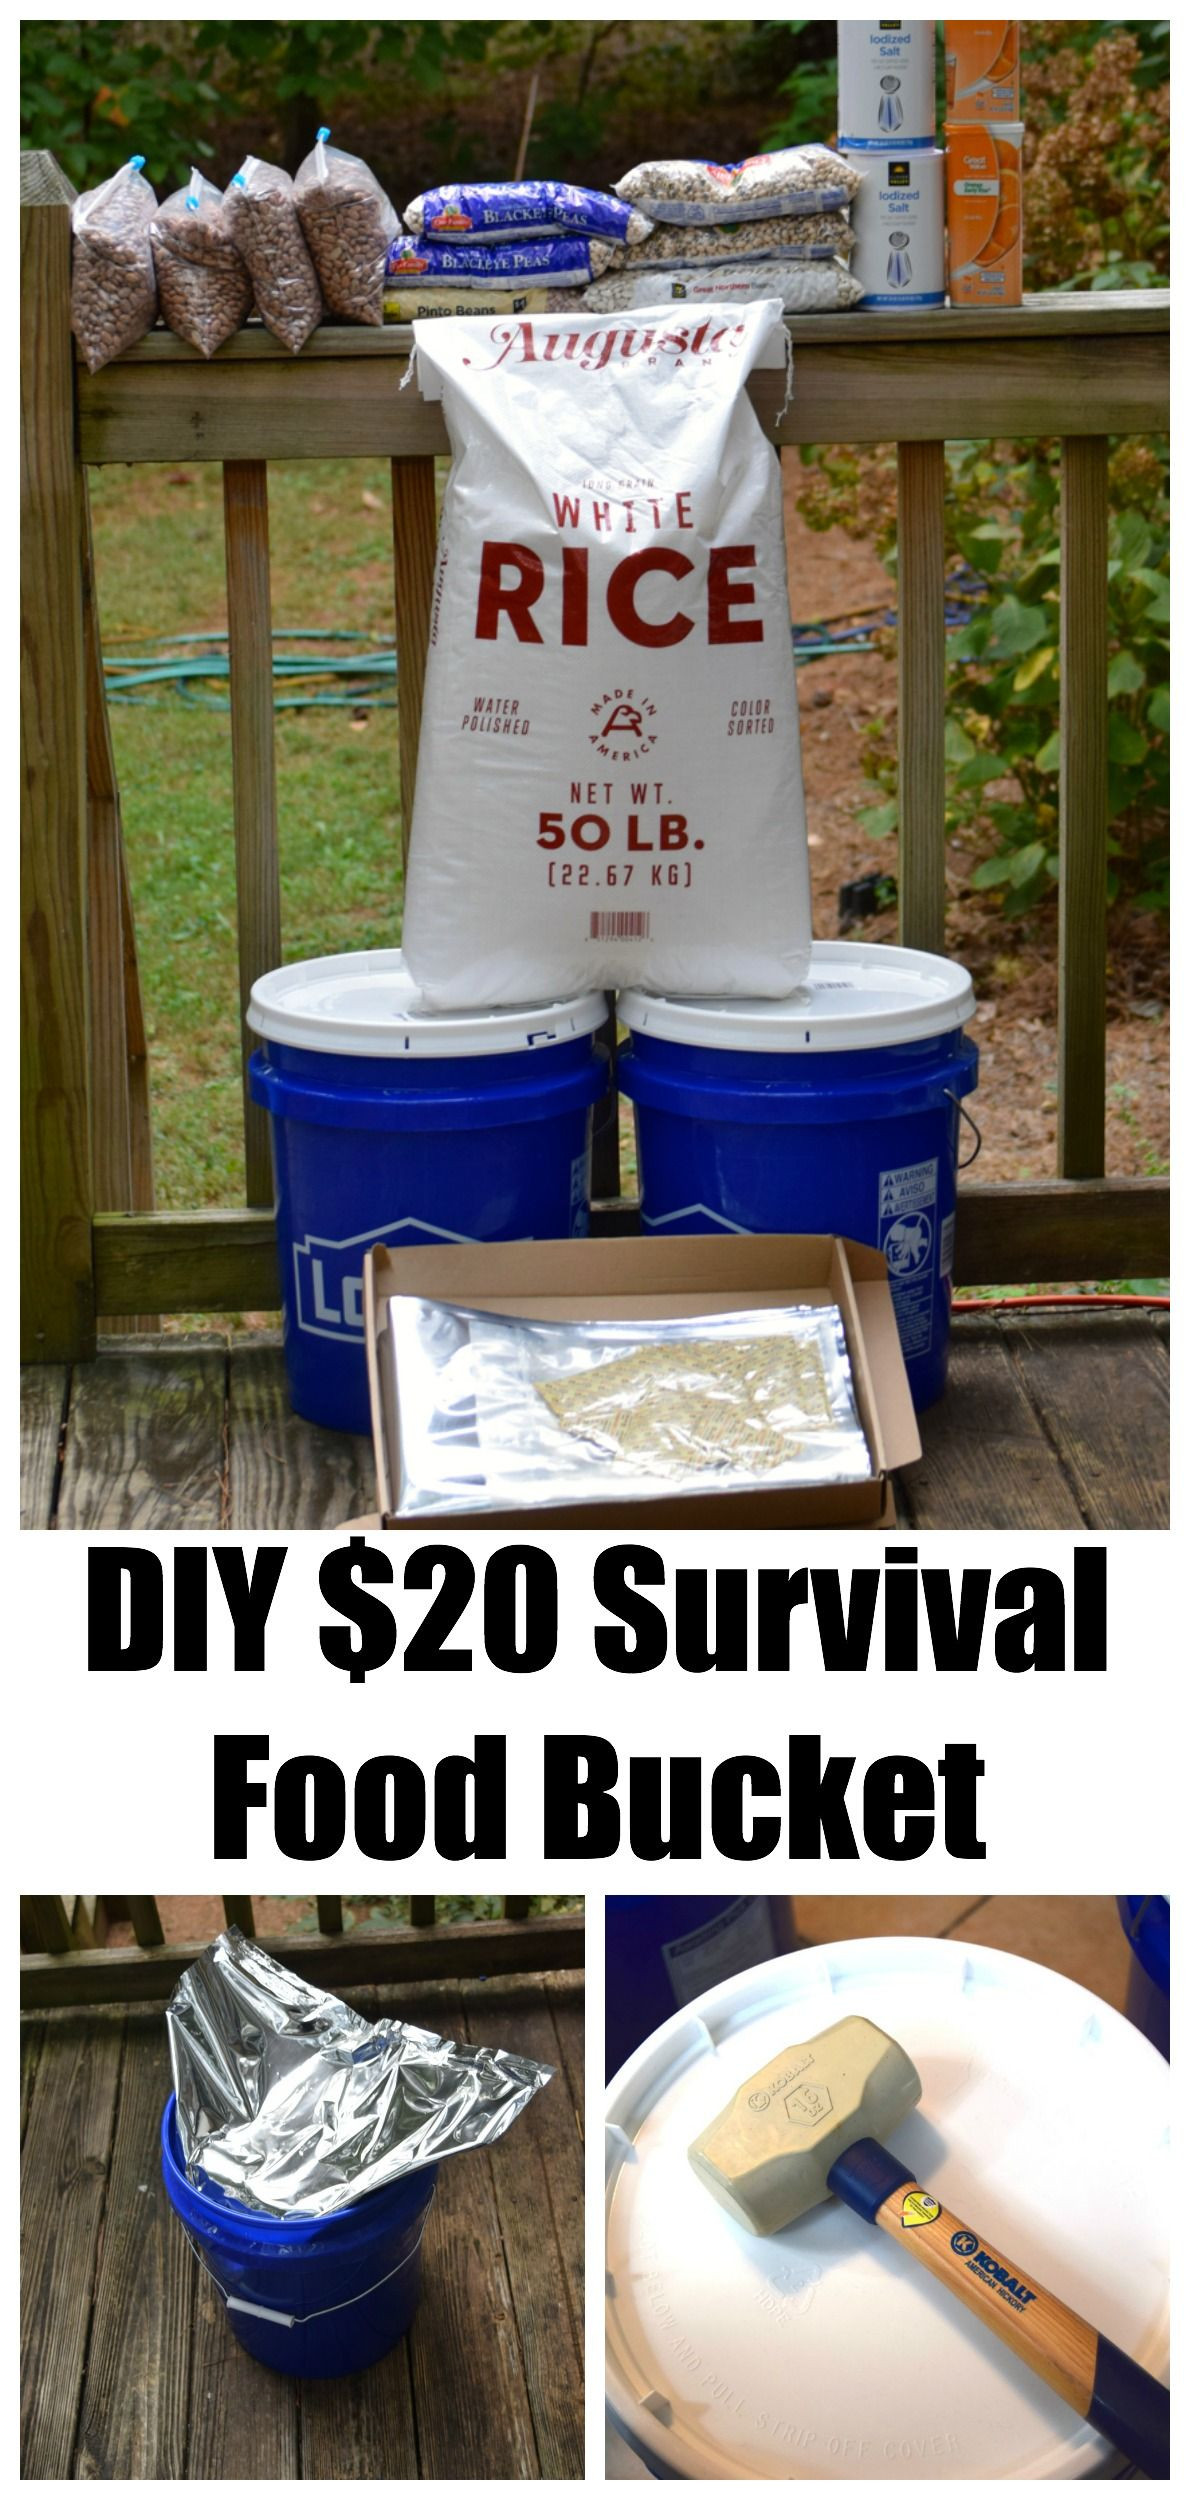 DIY Food Kits
 DIY $20 Survival Food Bucket A great thing to make up